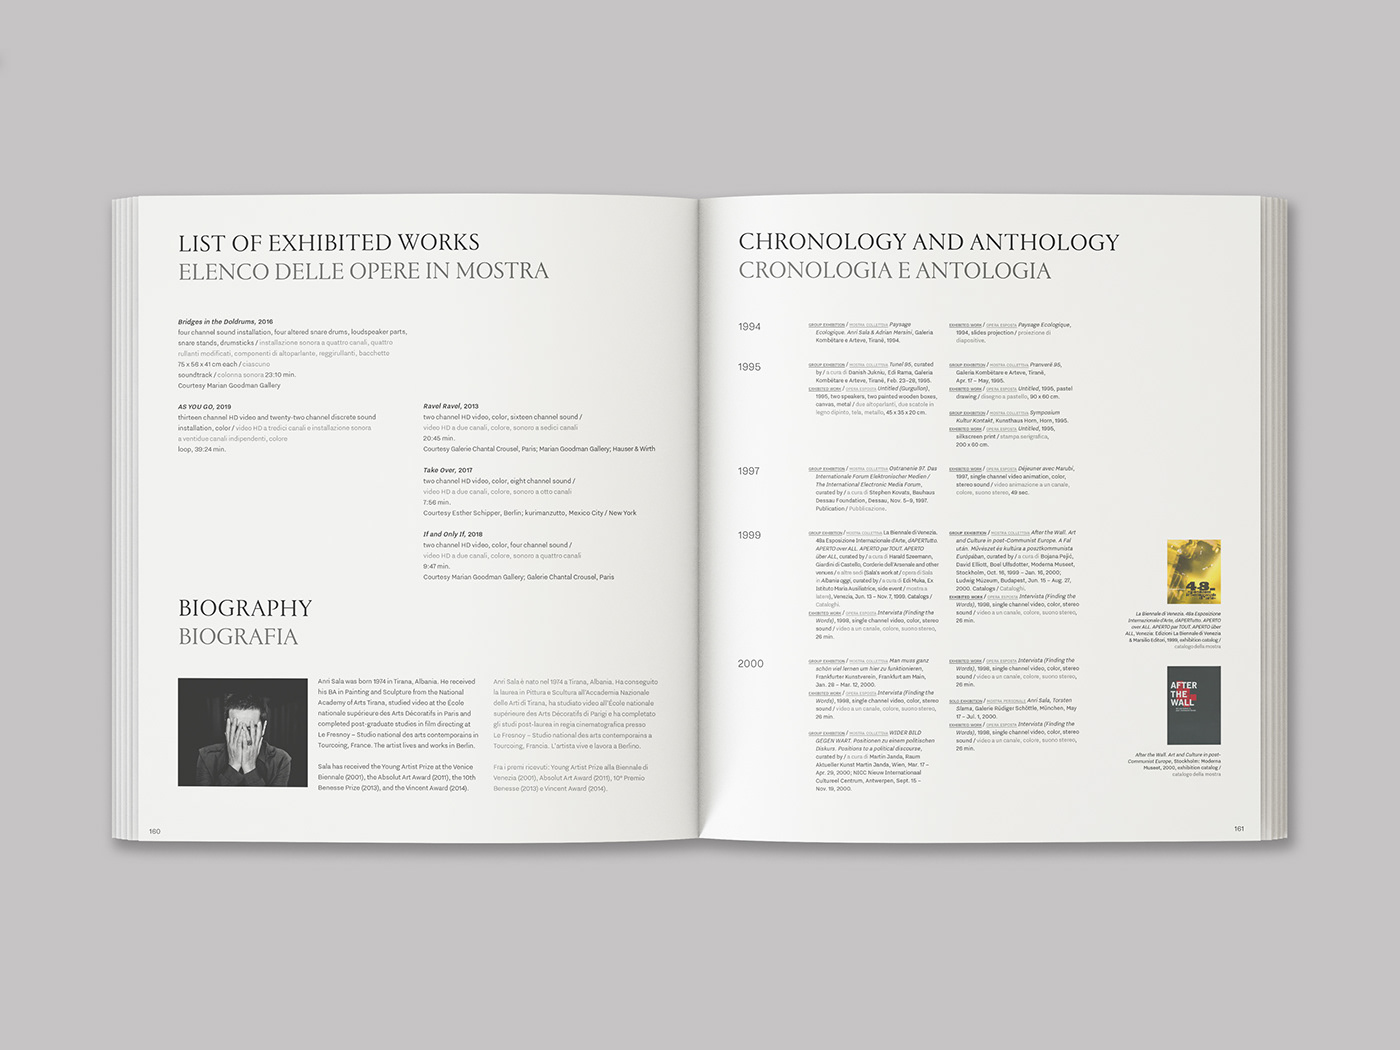 Anri Sala展览项目图册版式设计